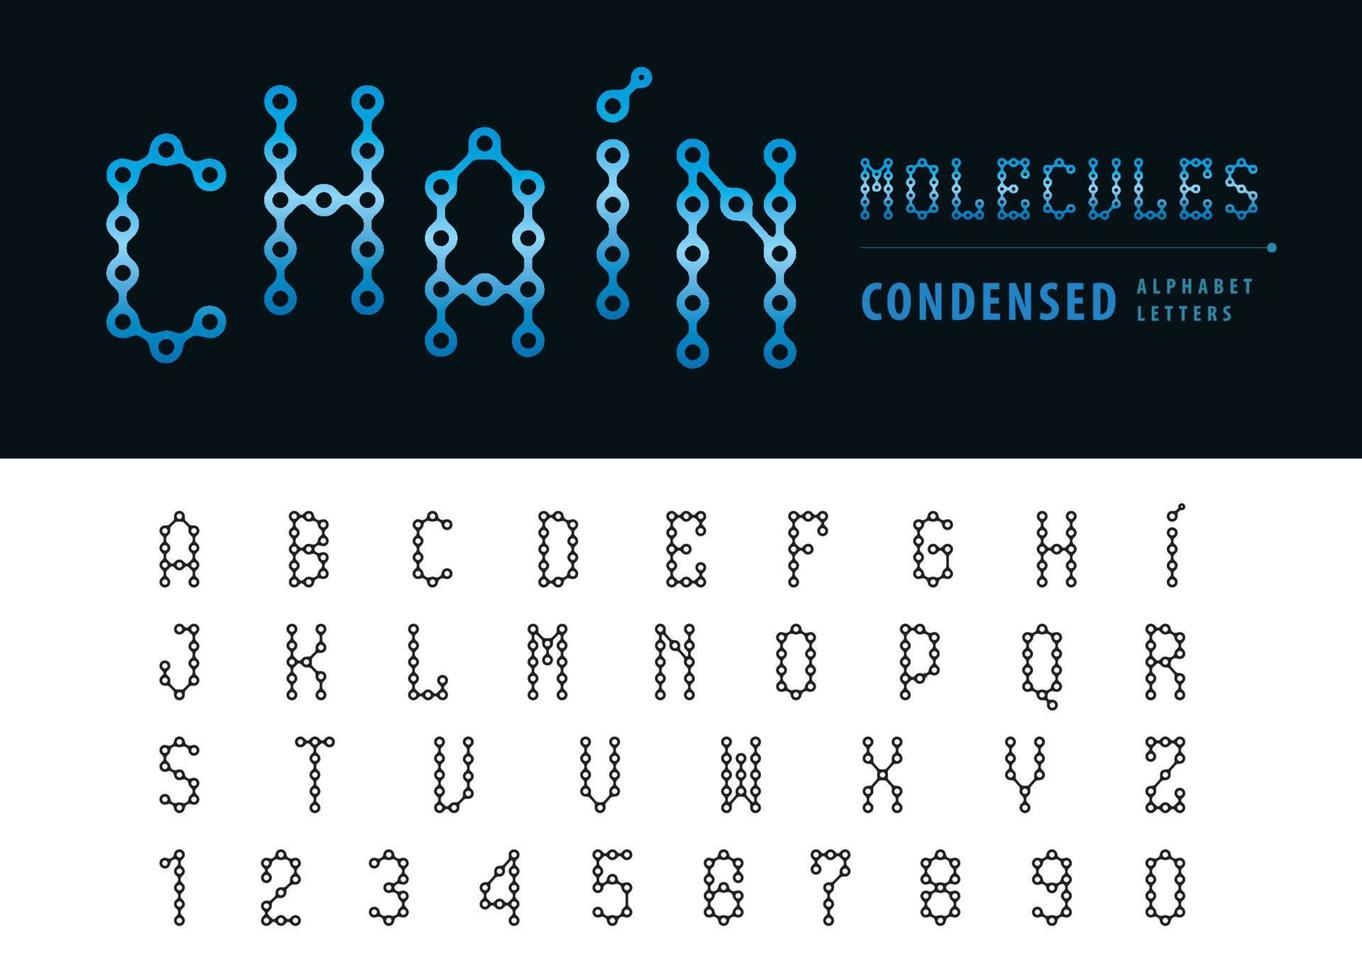 lettere e numeri dell'alfabeto a catena astratta, lettera di carattere condensato molecola vettore